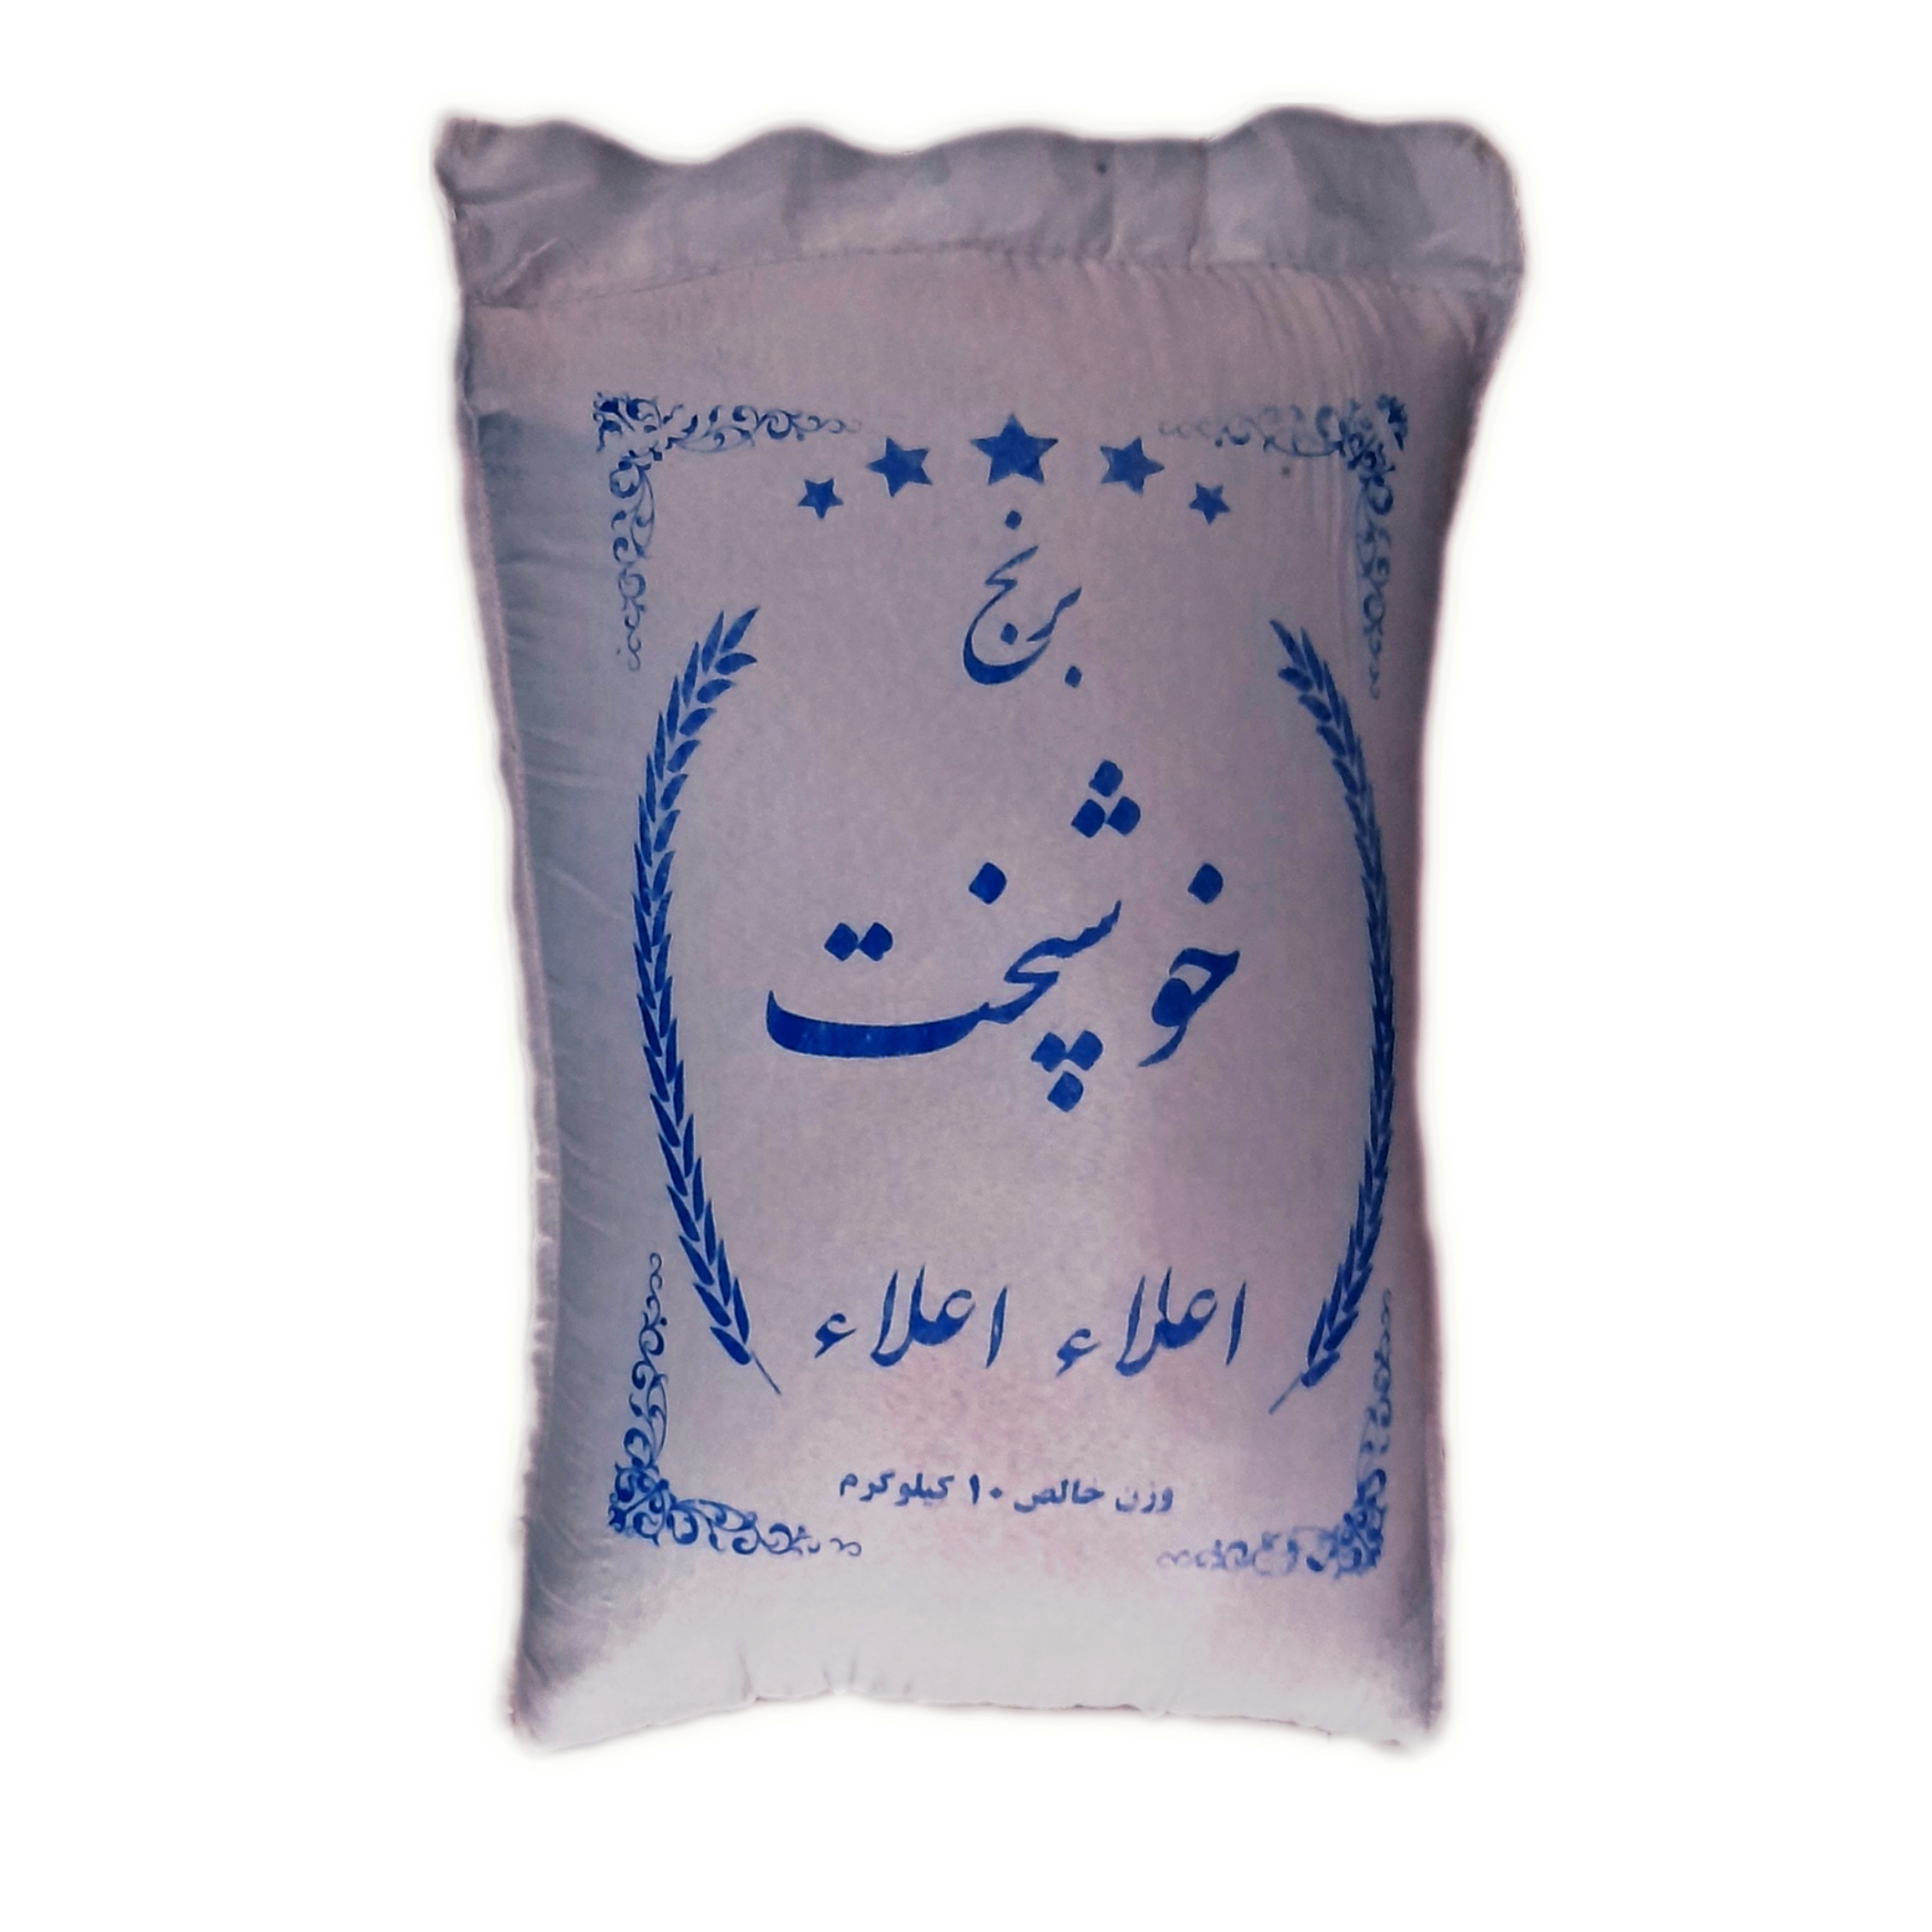 نکته خرید - قیمت روز برنج ایرانی طارم فجر  - 10 کیلوگرم خرید